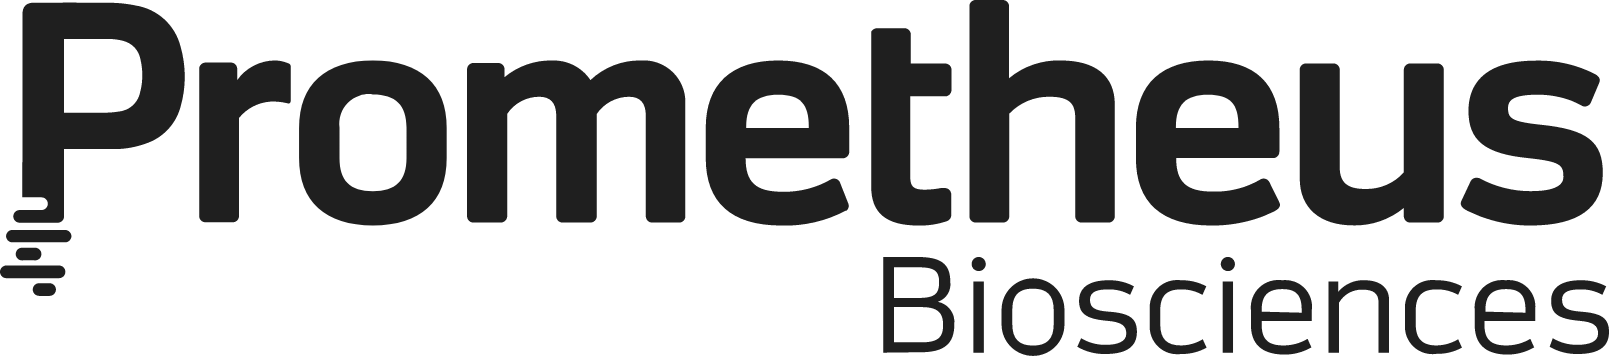 Prometheus Biosciences logo large (transparent PNG)